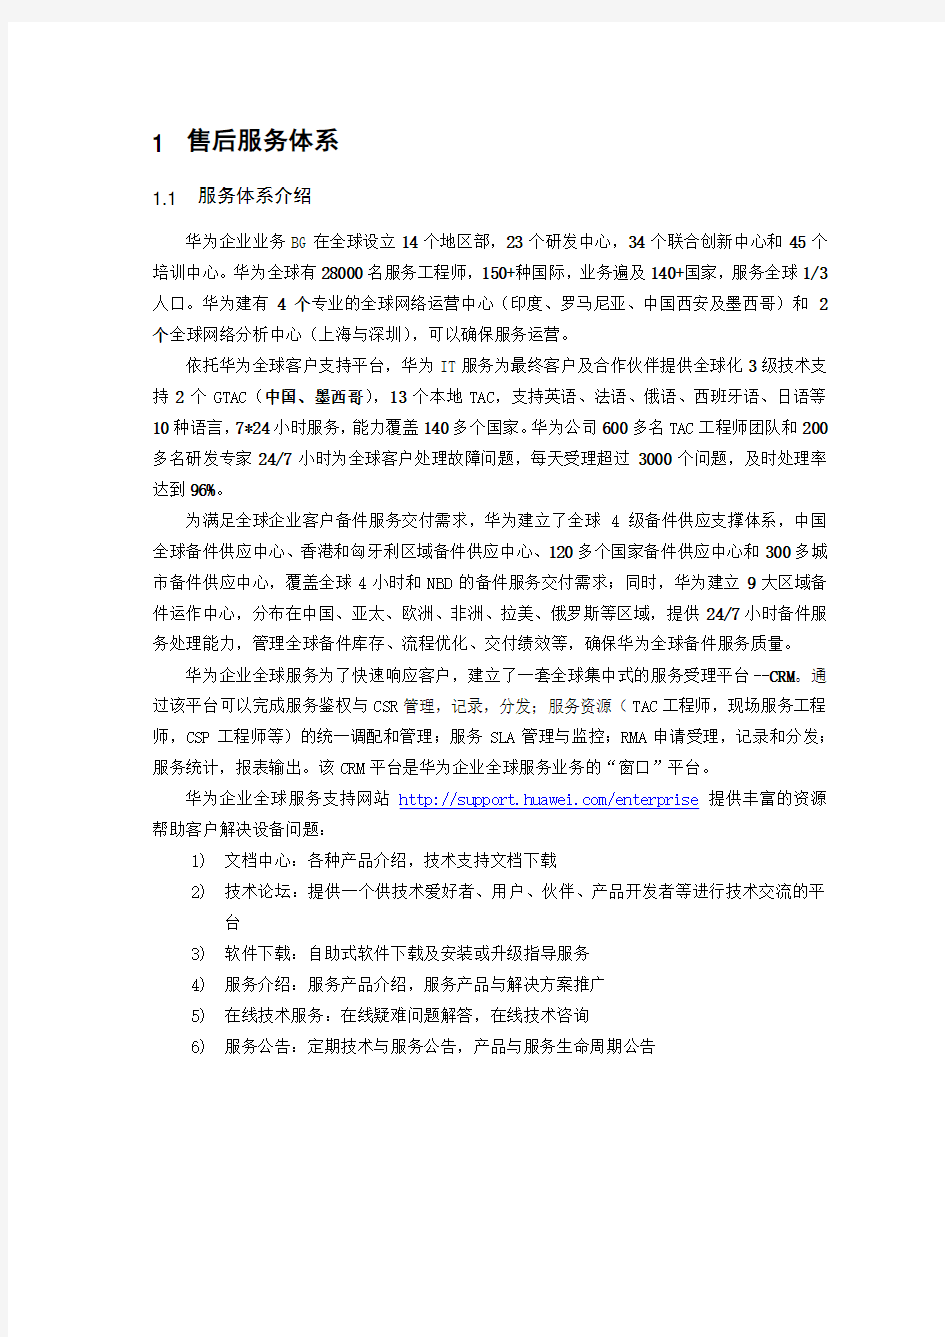 华为企业网中国区服务体系介绍